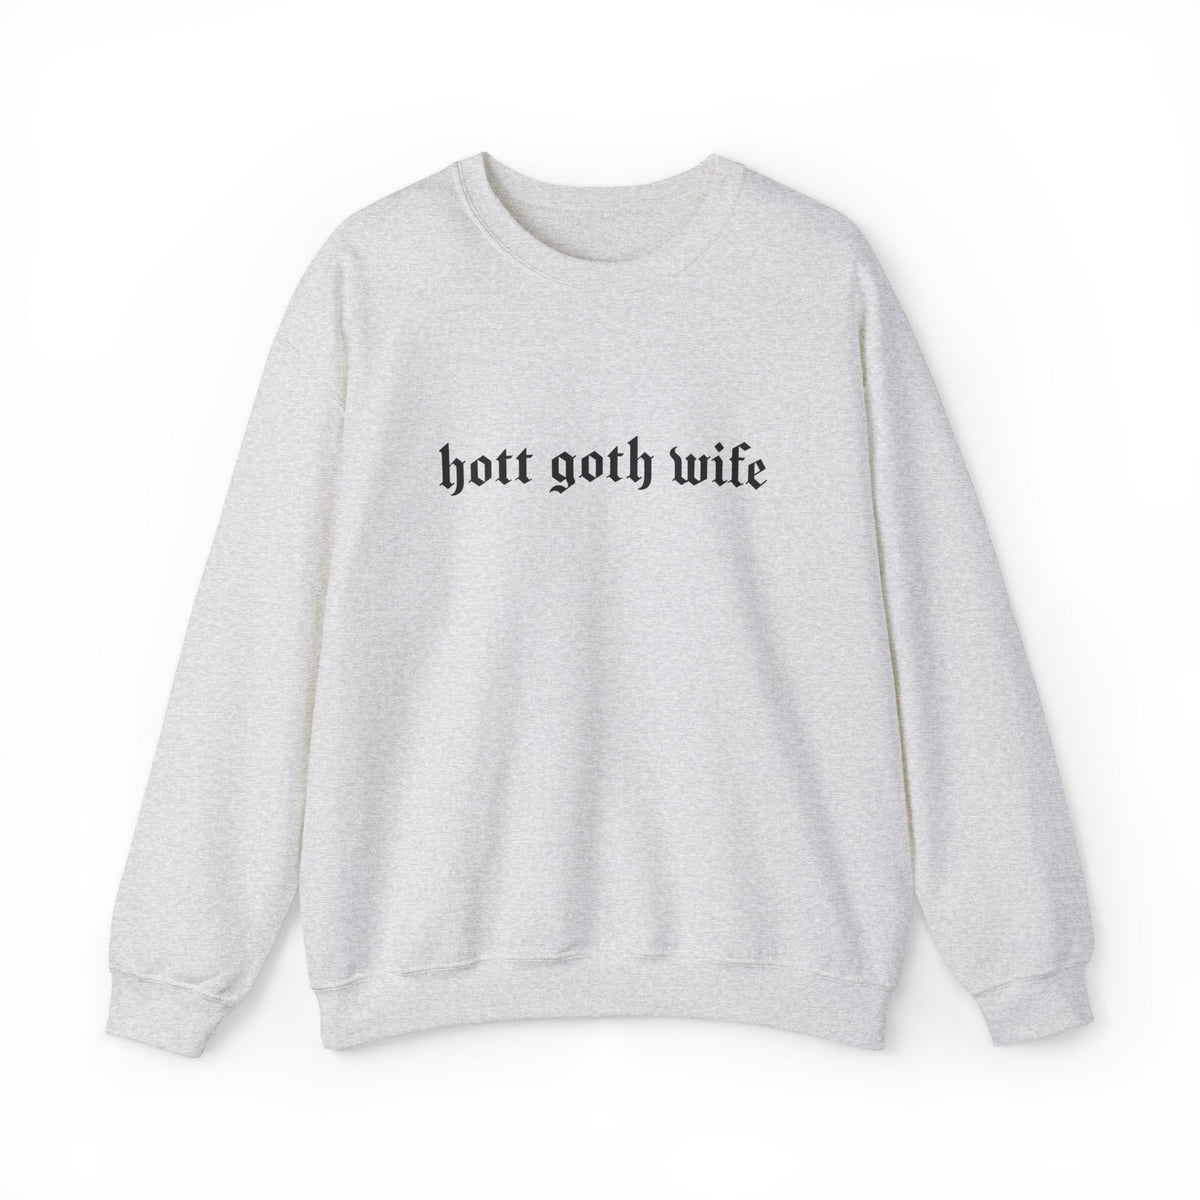 Hott Goth Wife Long Sleeve Crew Neck Sweatshirt - Goth Cloth Co.Sweatshirt11963758810079116913